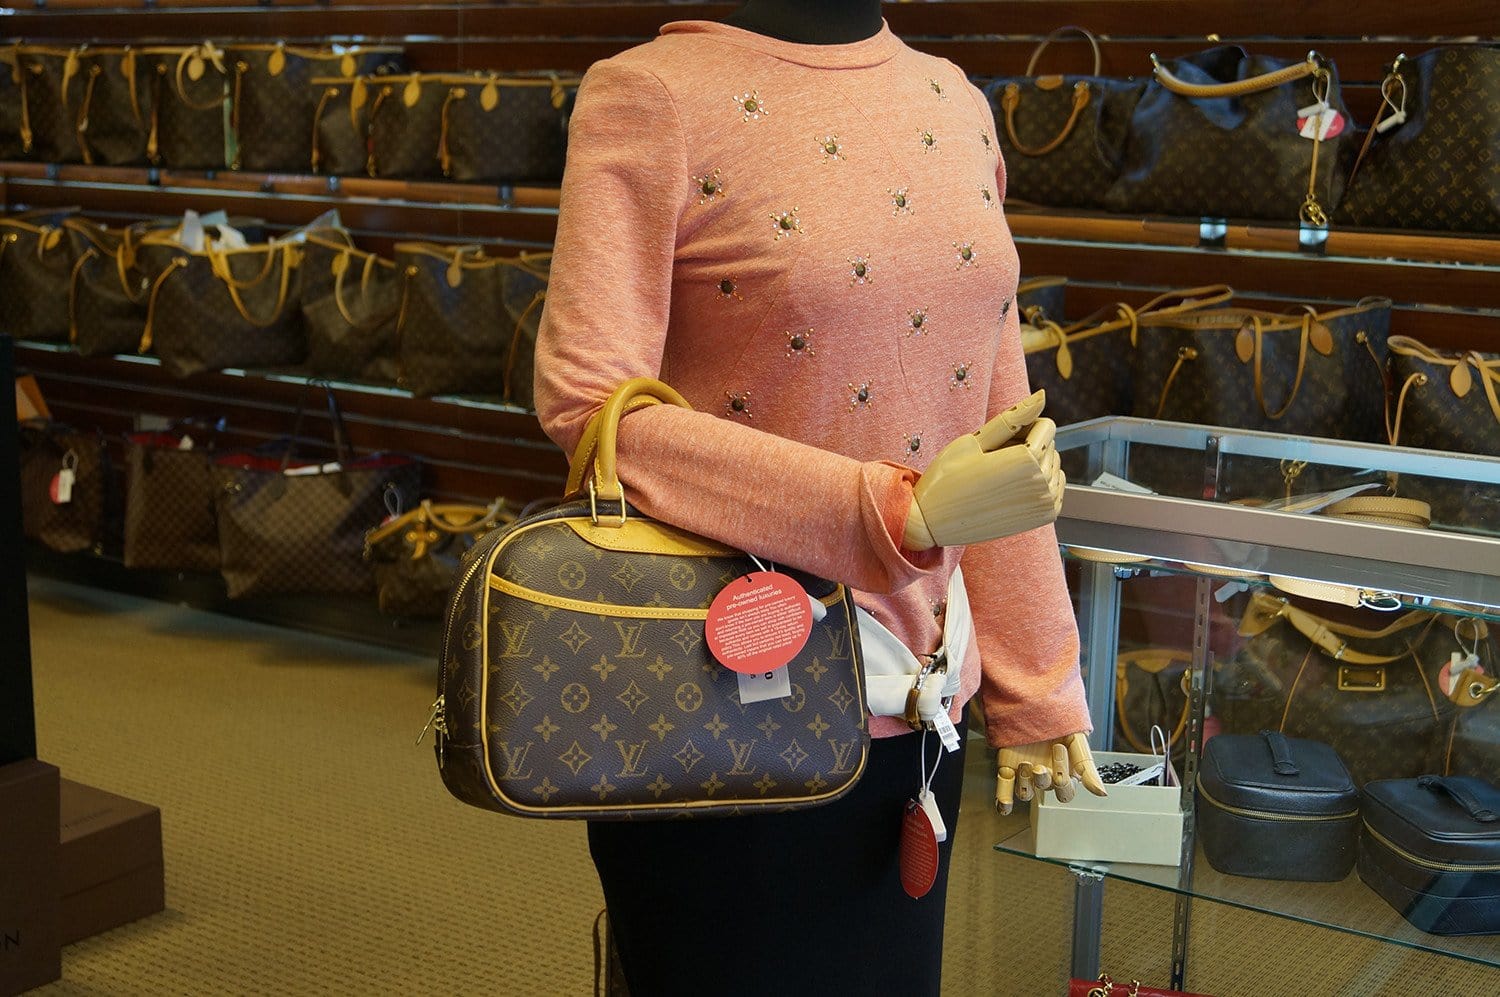 Louis Vuitton Trouville Shoulder Bags for Women